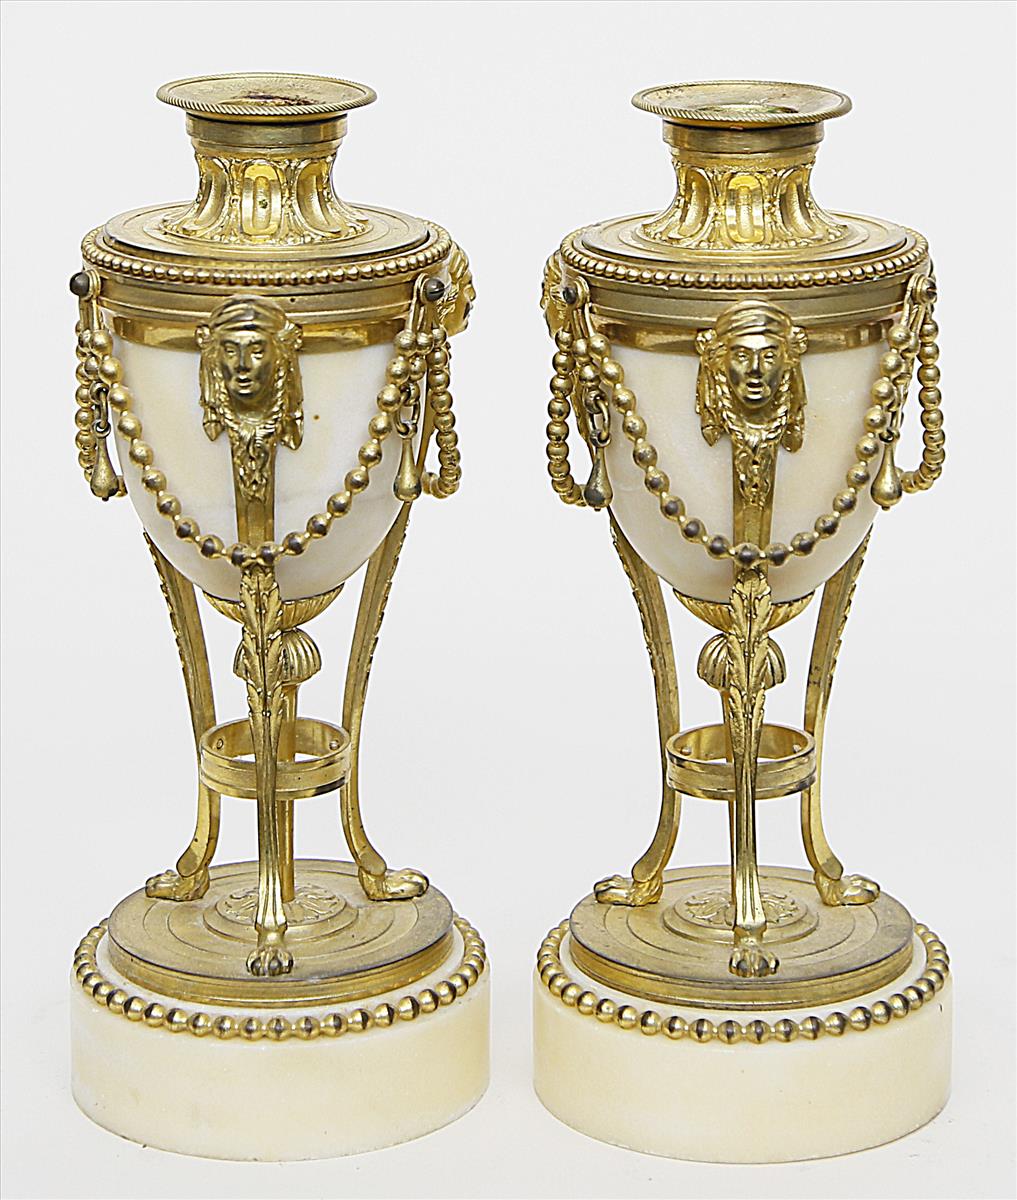 Paar Ziervasen bzw. Leuchter im Stil Louis XVI. - Image 2 of 2